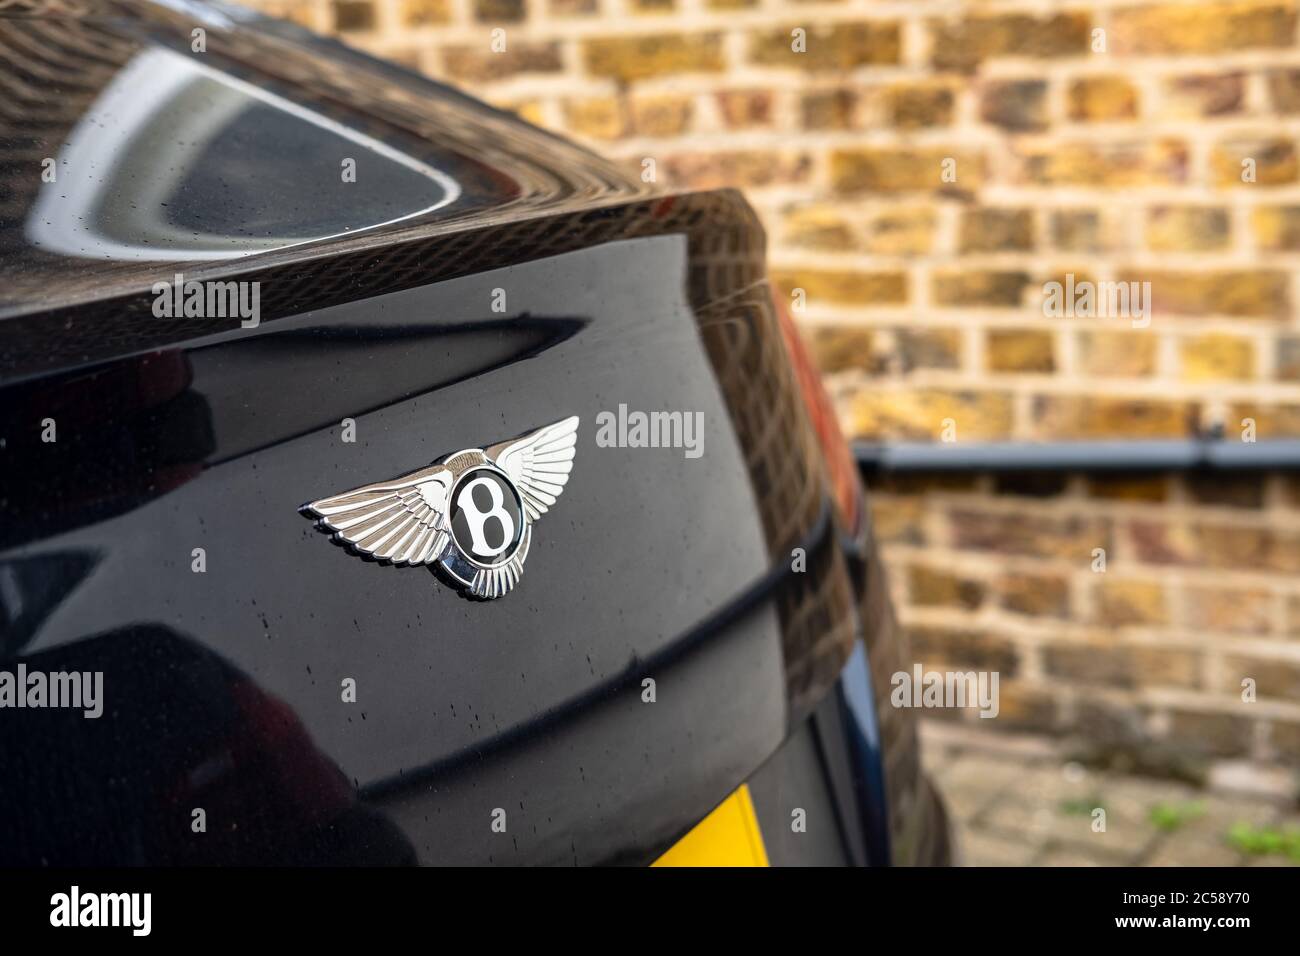 Vue isolée et peu profonde d'un célèbre logo de voiture de luxe britannique visible sur le coffre d'une voiture de sport. Situé dans un parking privé. Banque D'Images